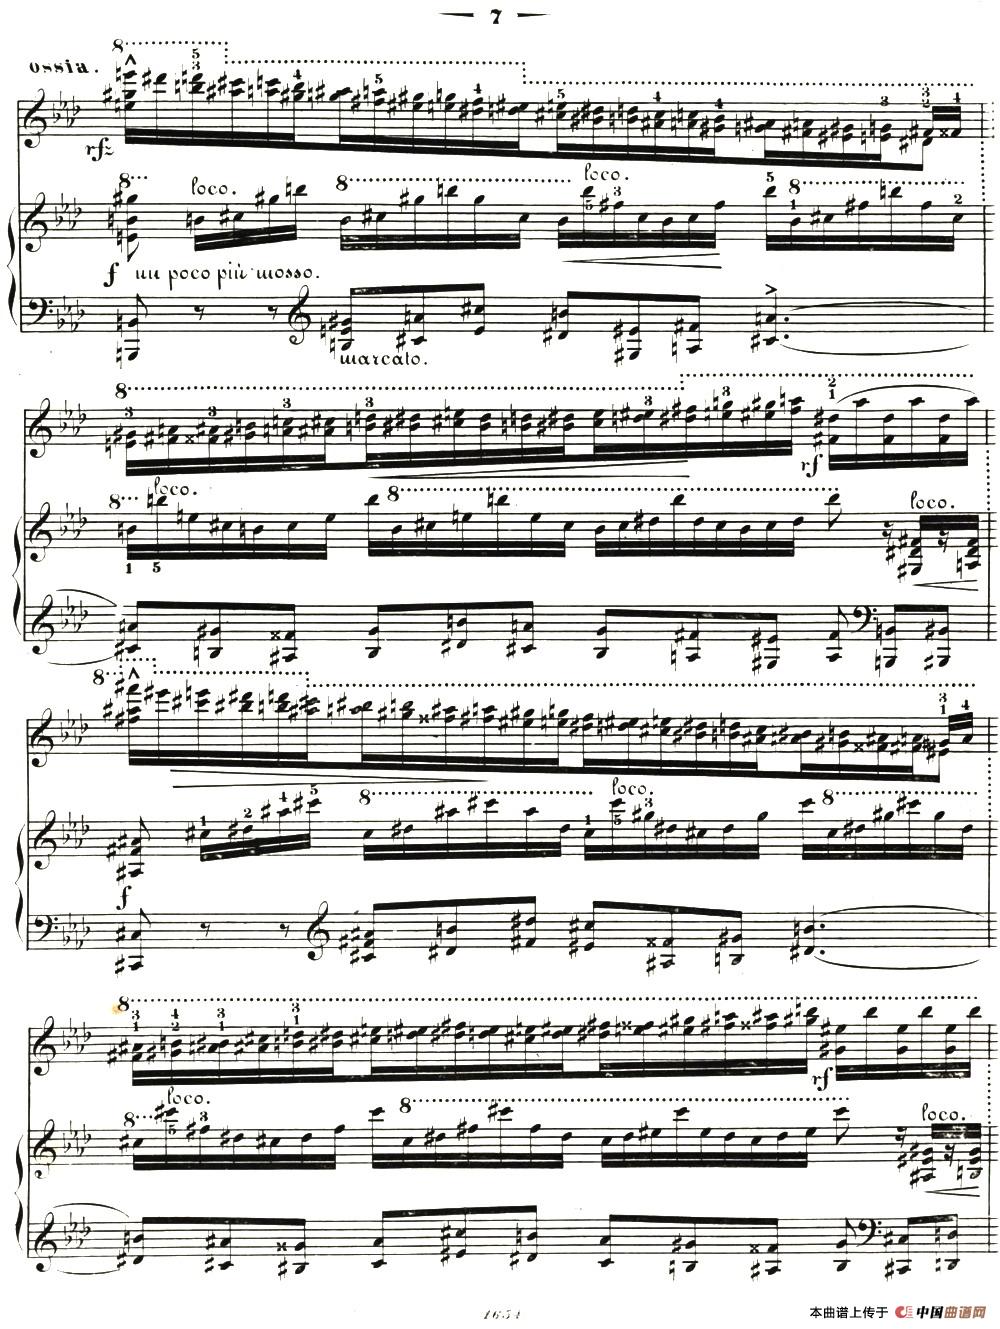 李斯特音乐会练习曲 S144（2 轻盈 f小调 S144 La leggierezza F minor）(1)_018.jpg